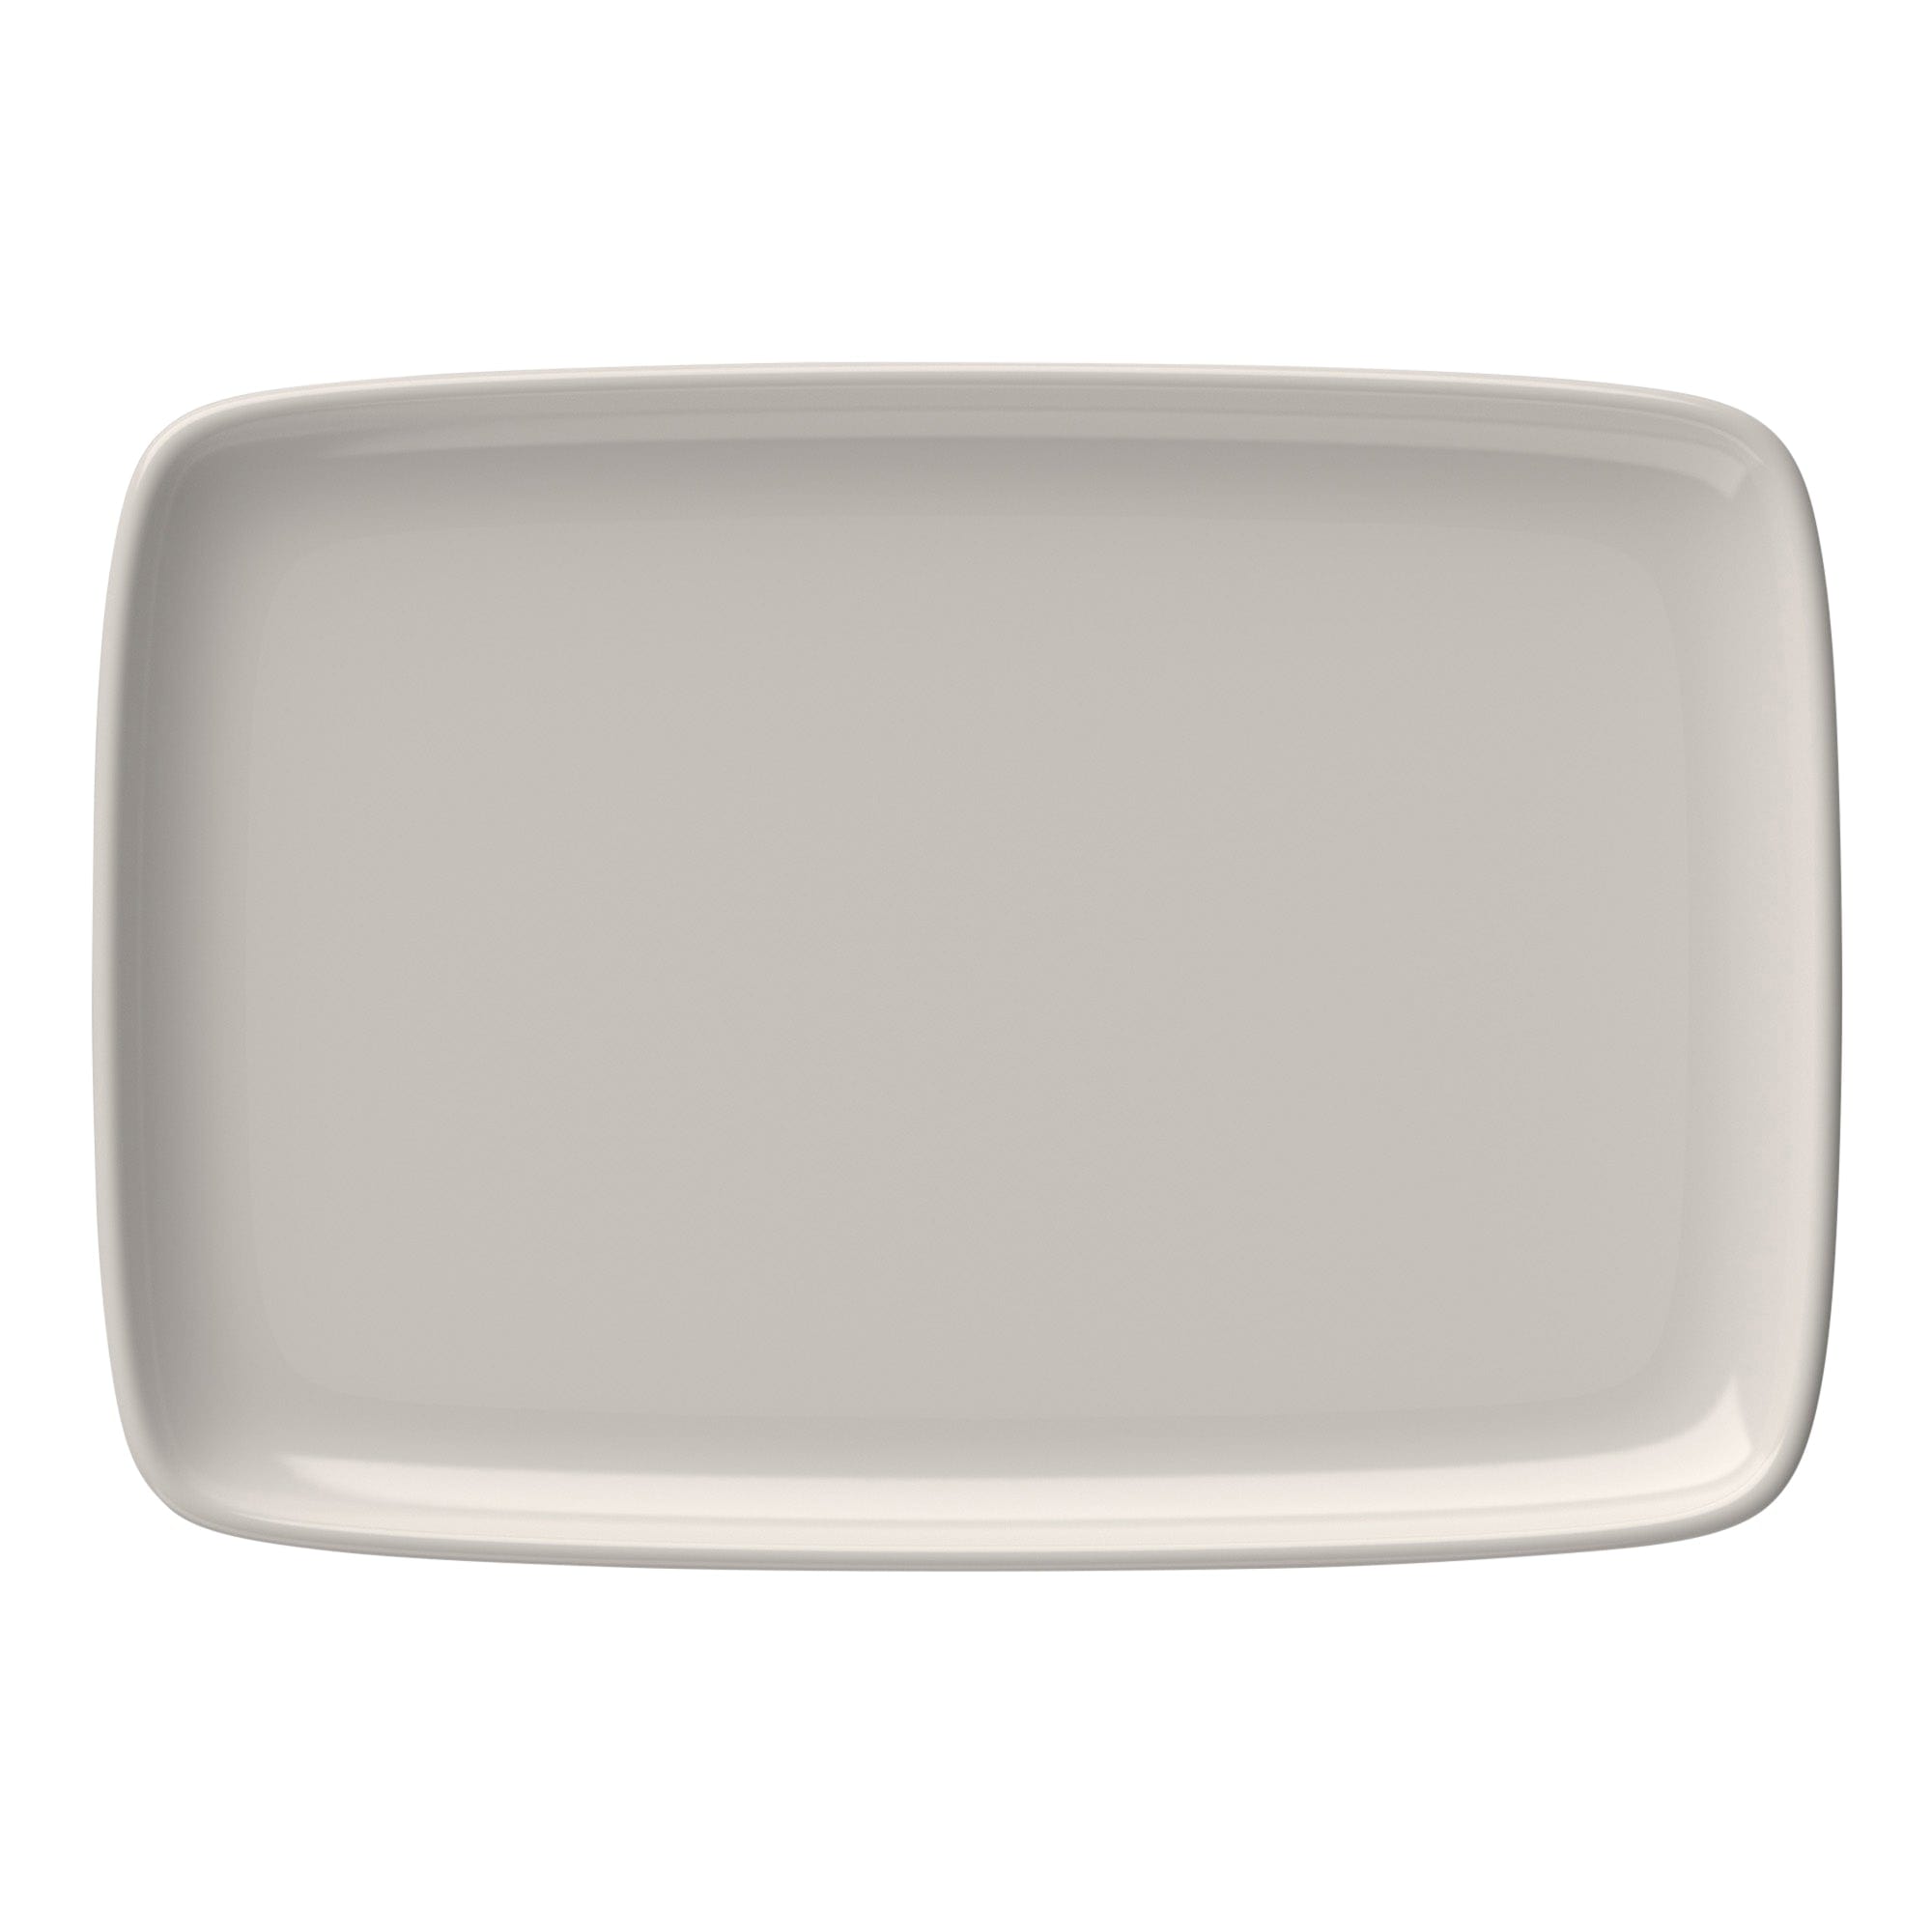 Quadro Porcelain Rectangular Platter 13.2"x9.1"